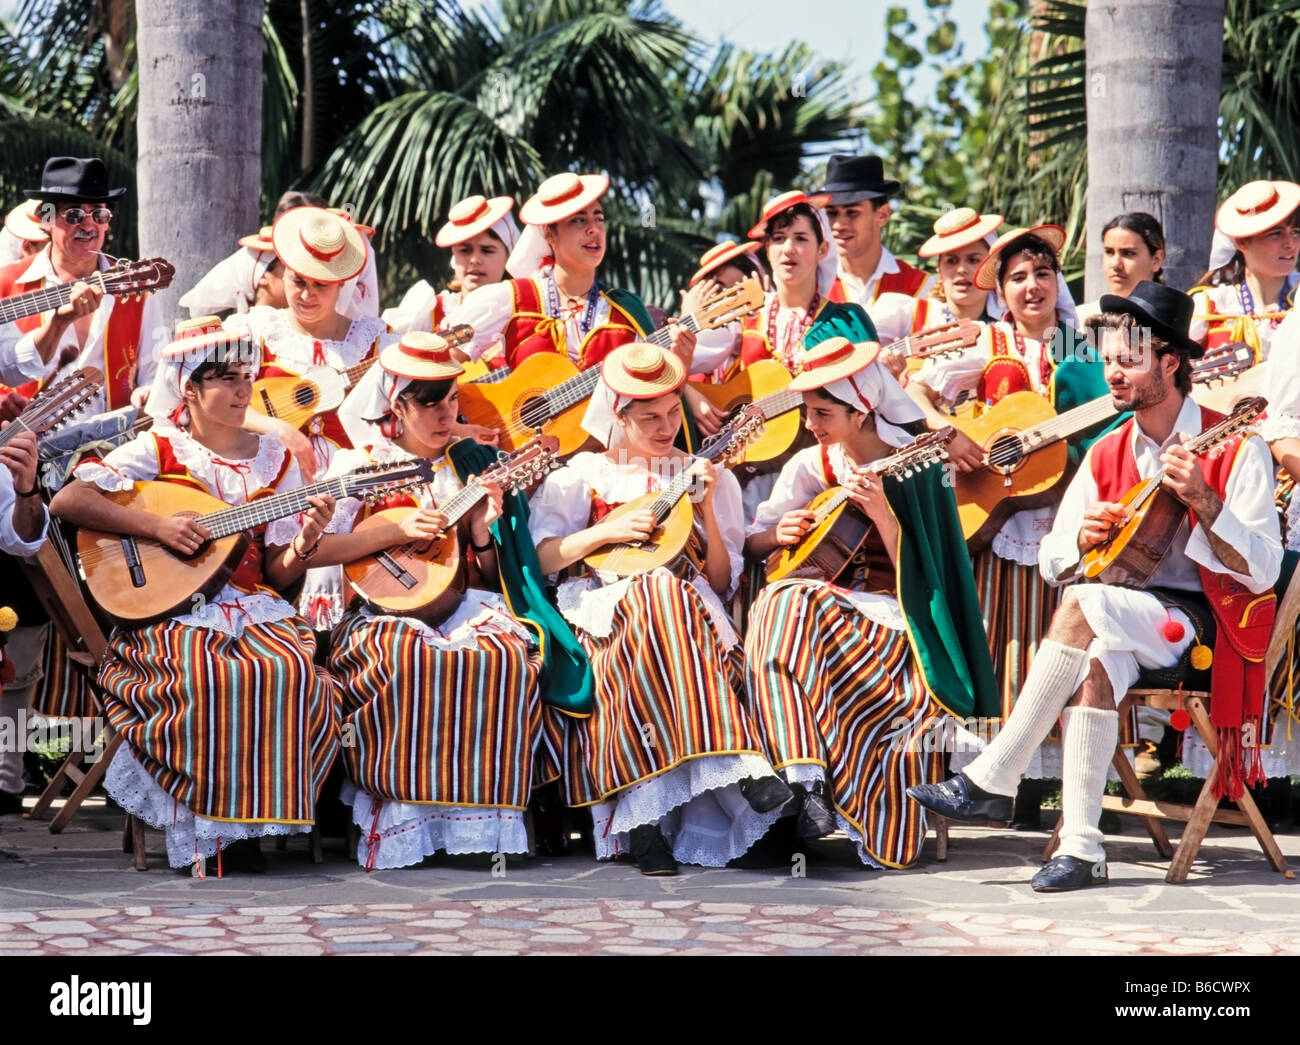 Spanien, Kanaren, Teneriffa, traditionelle musikalische Gruppe Stockfoto